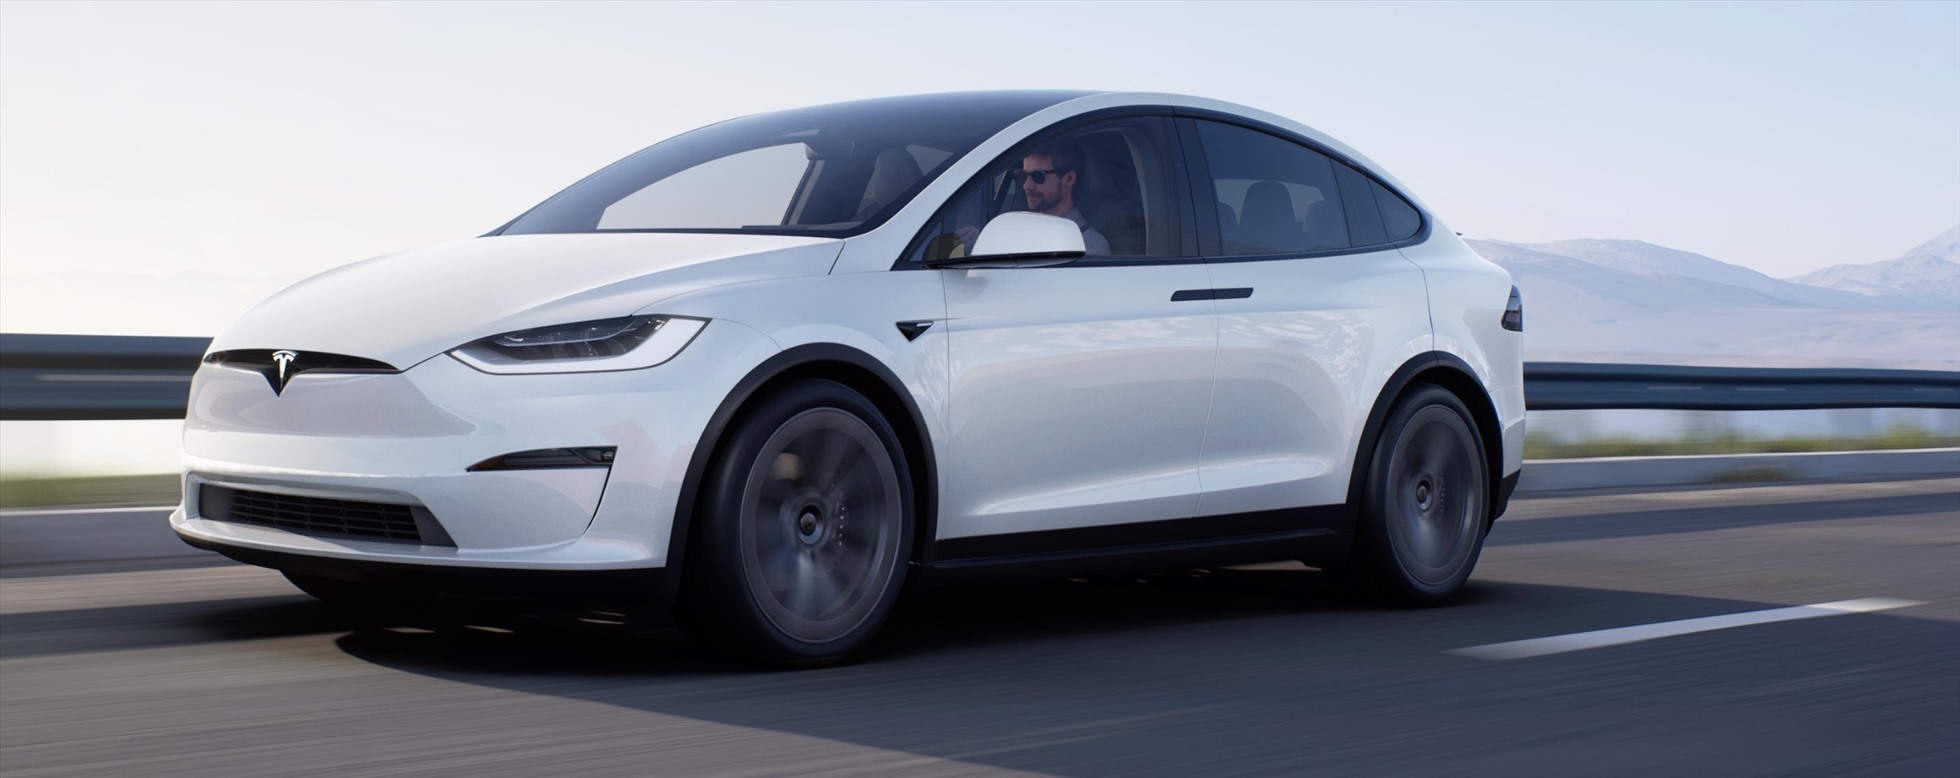 Tesla bị cáo buộc lừa dối khách hàng về công nghệ lái xe tự động